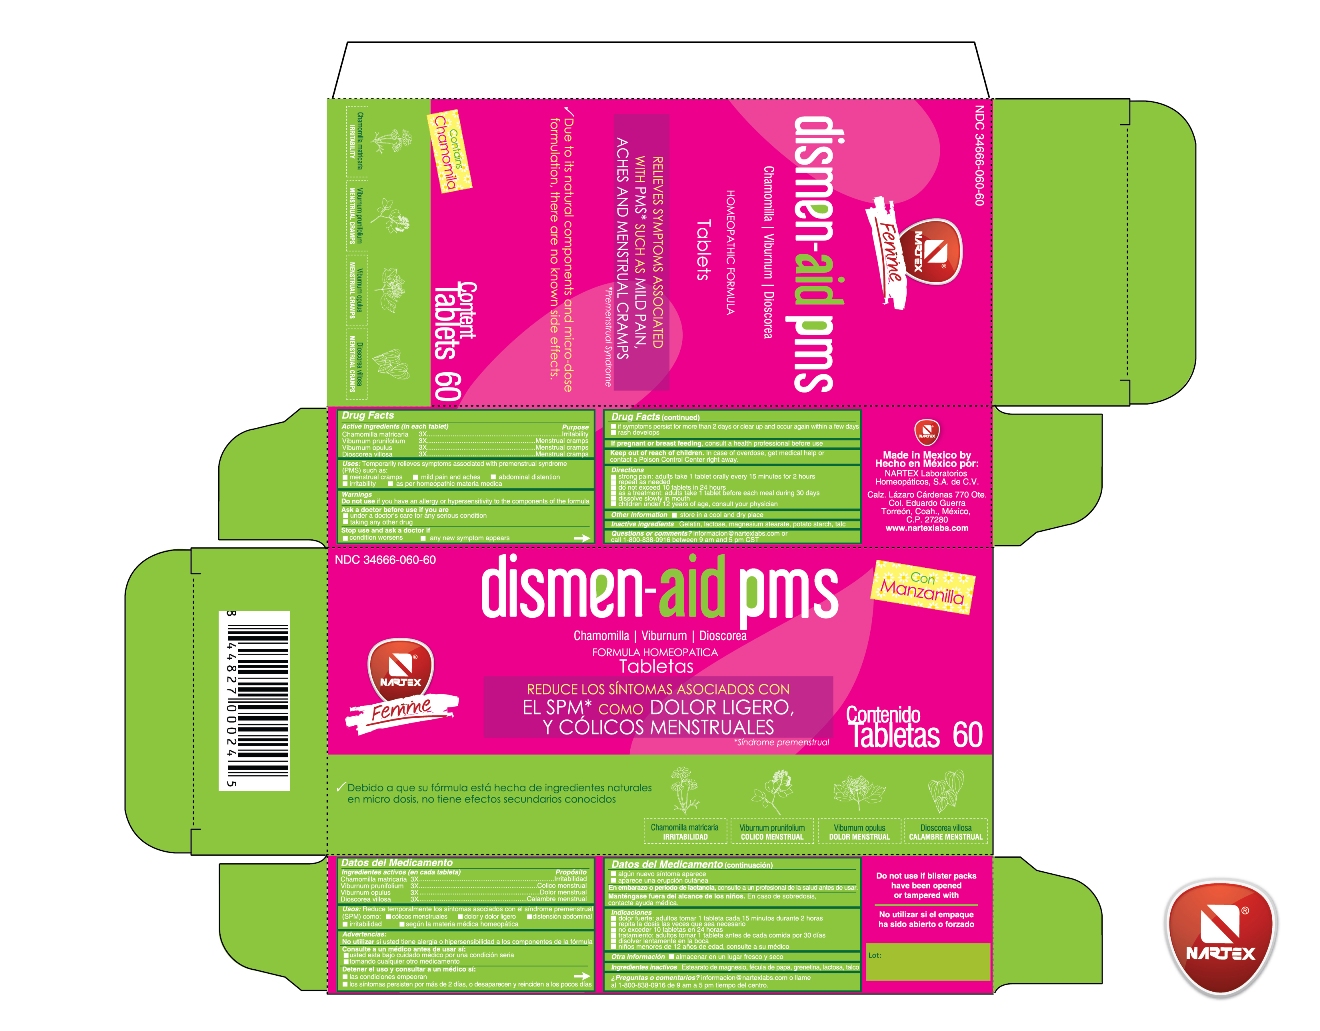 dismen aid pms Carton